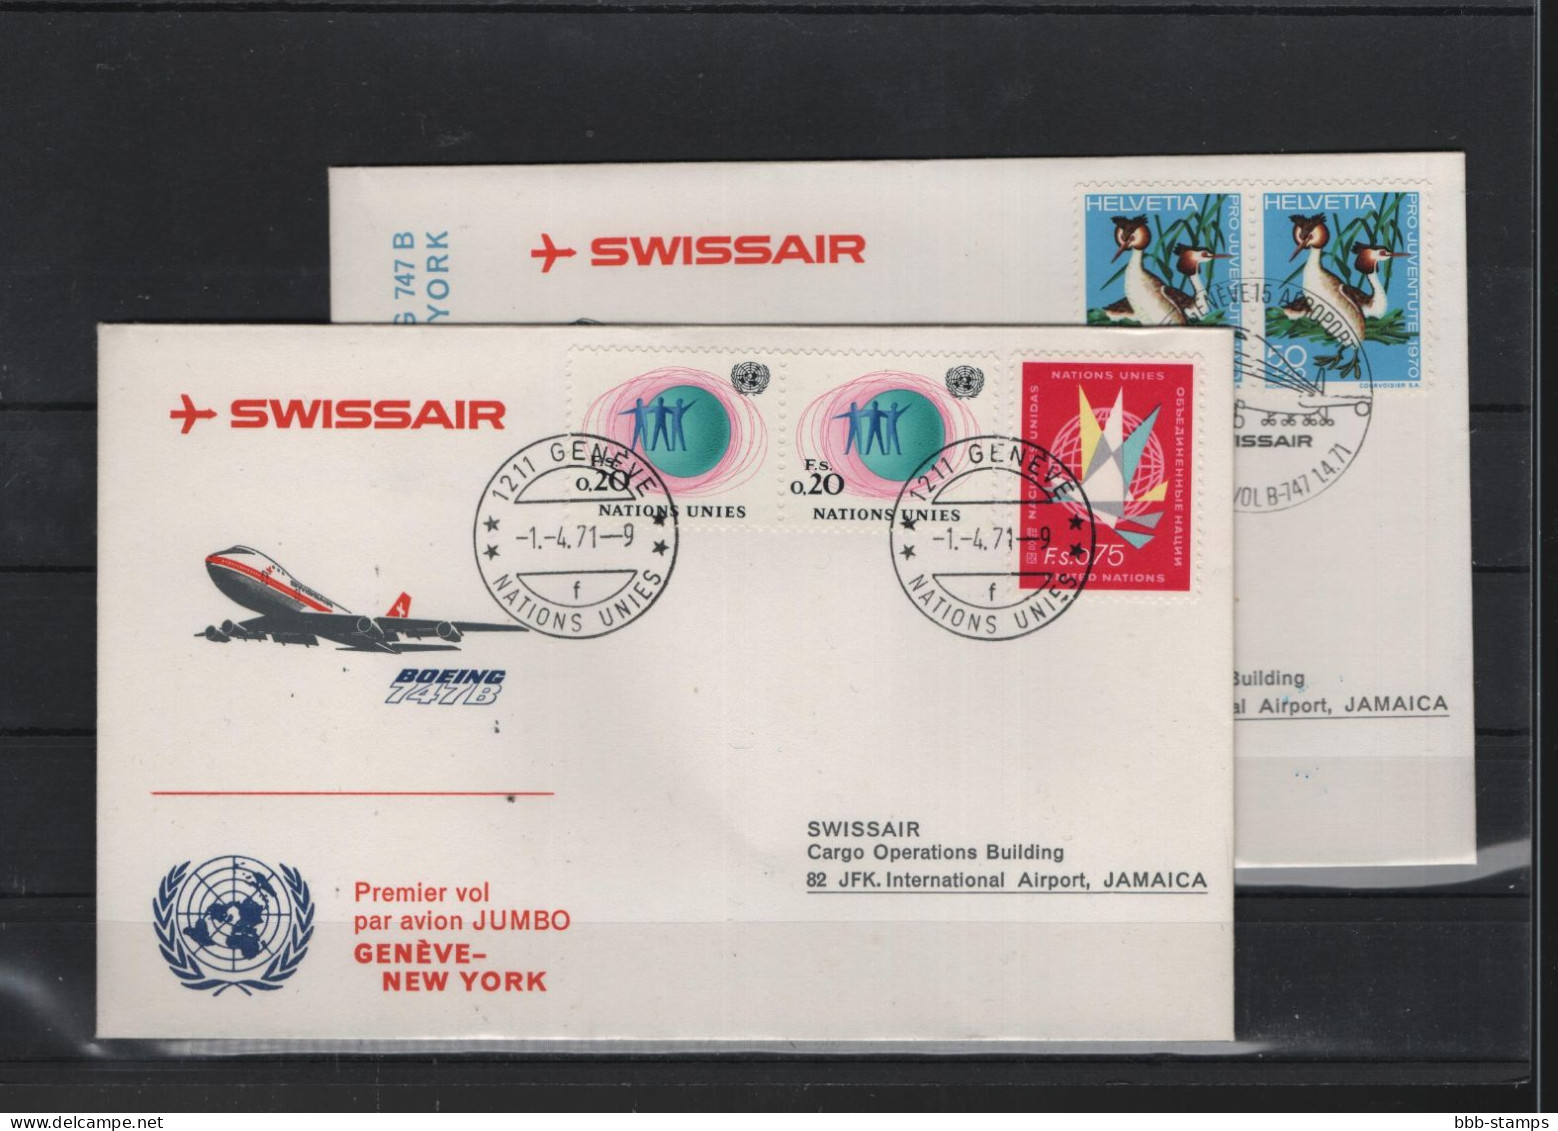 Schweiz Luftpost FFC Swissair 1.4.1971 Genf - New York VV - First Flight Covers